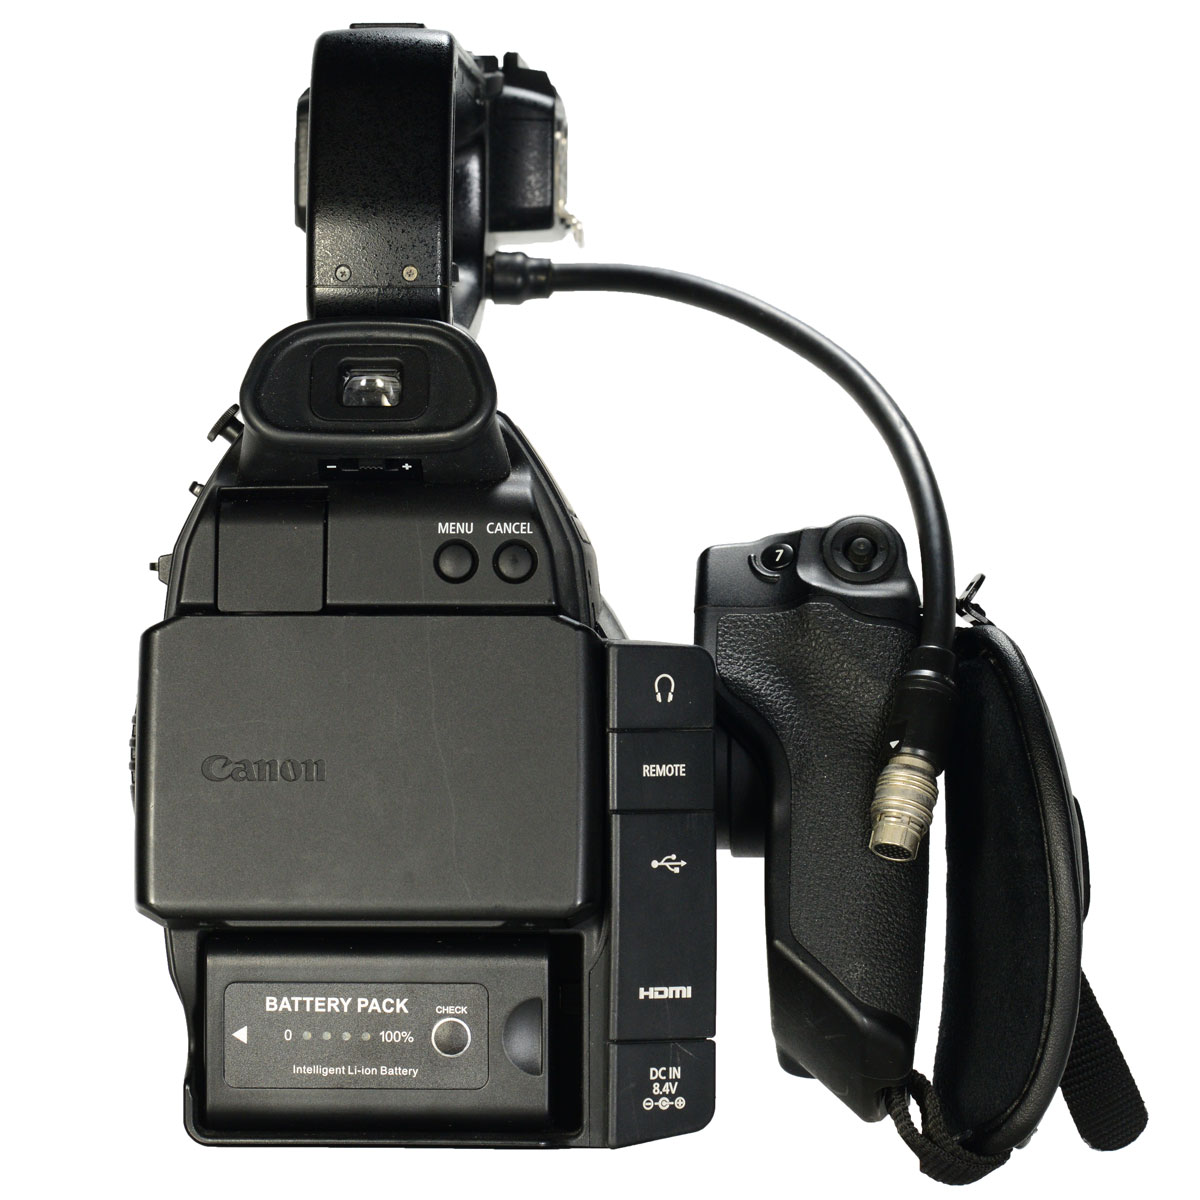 Canon EOS C б/у